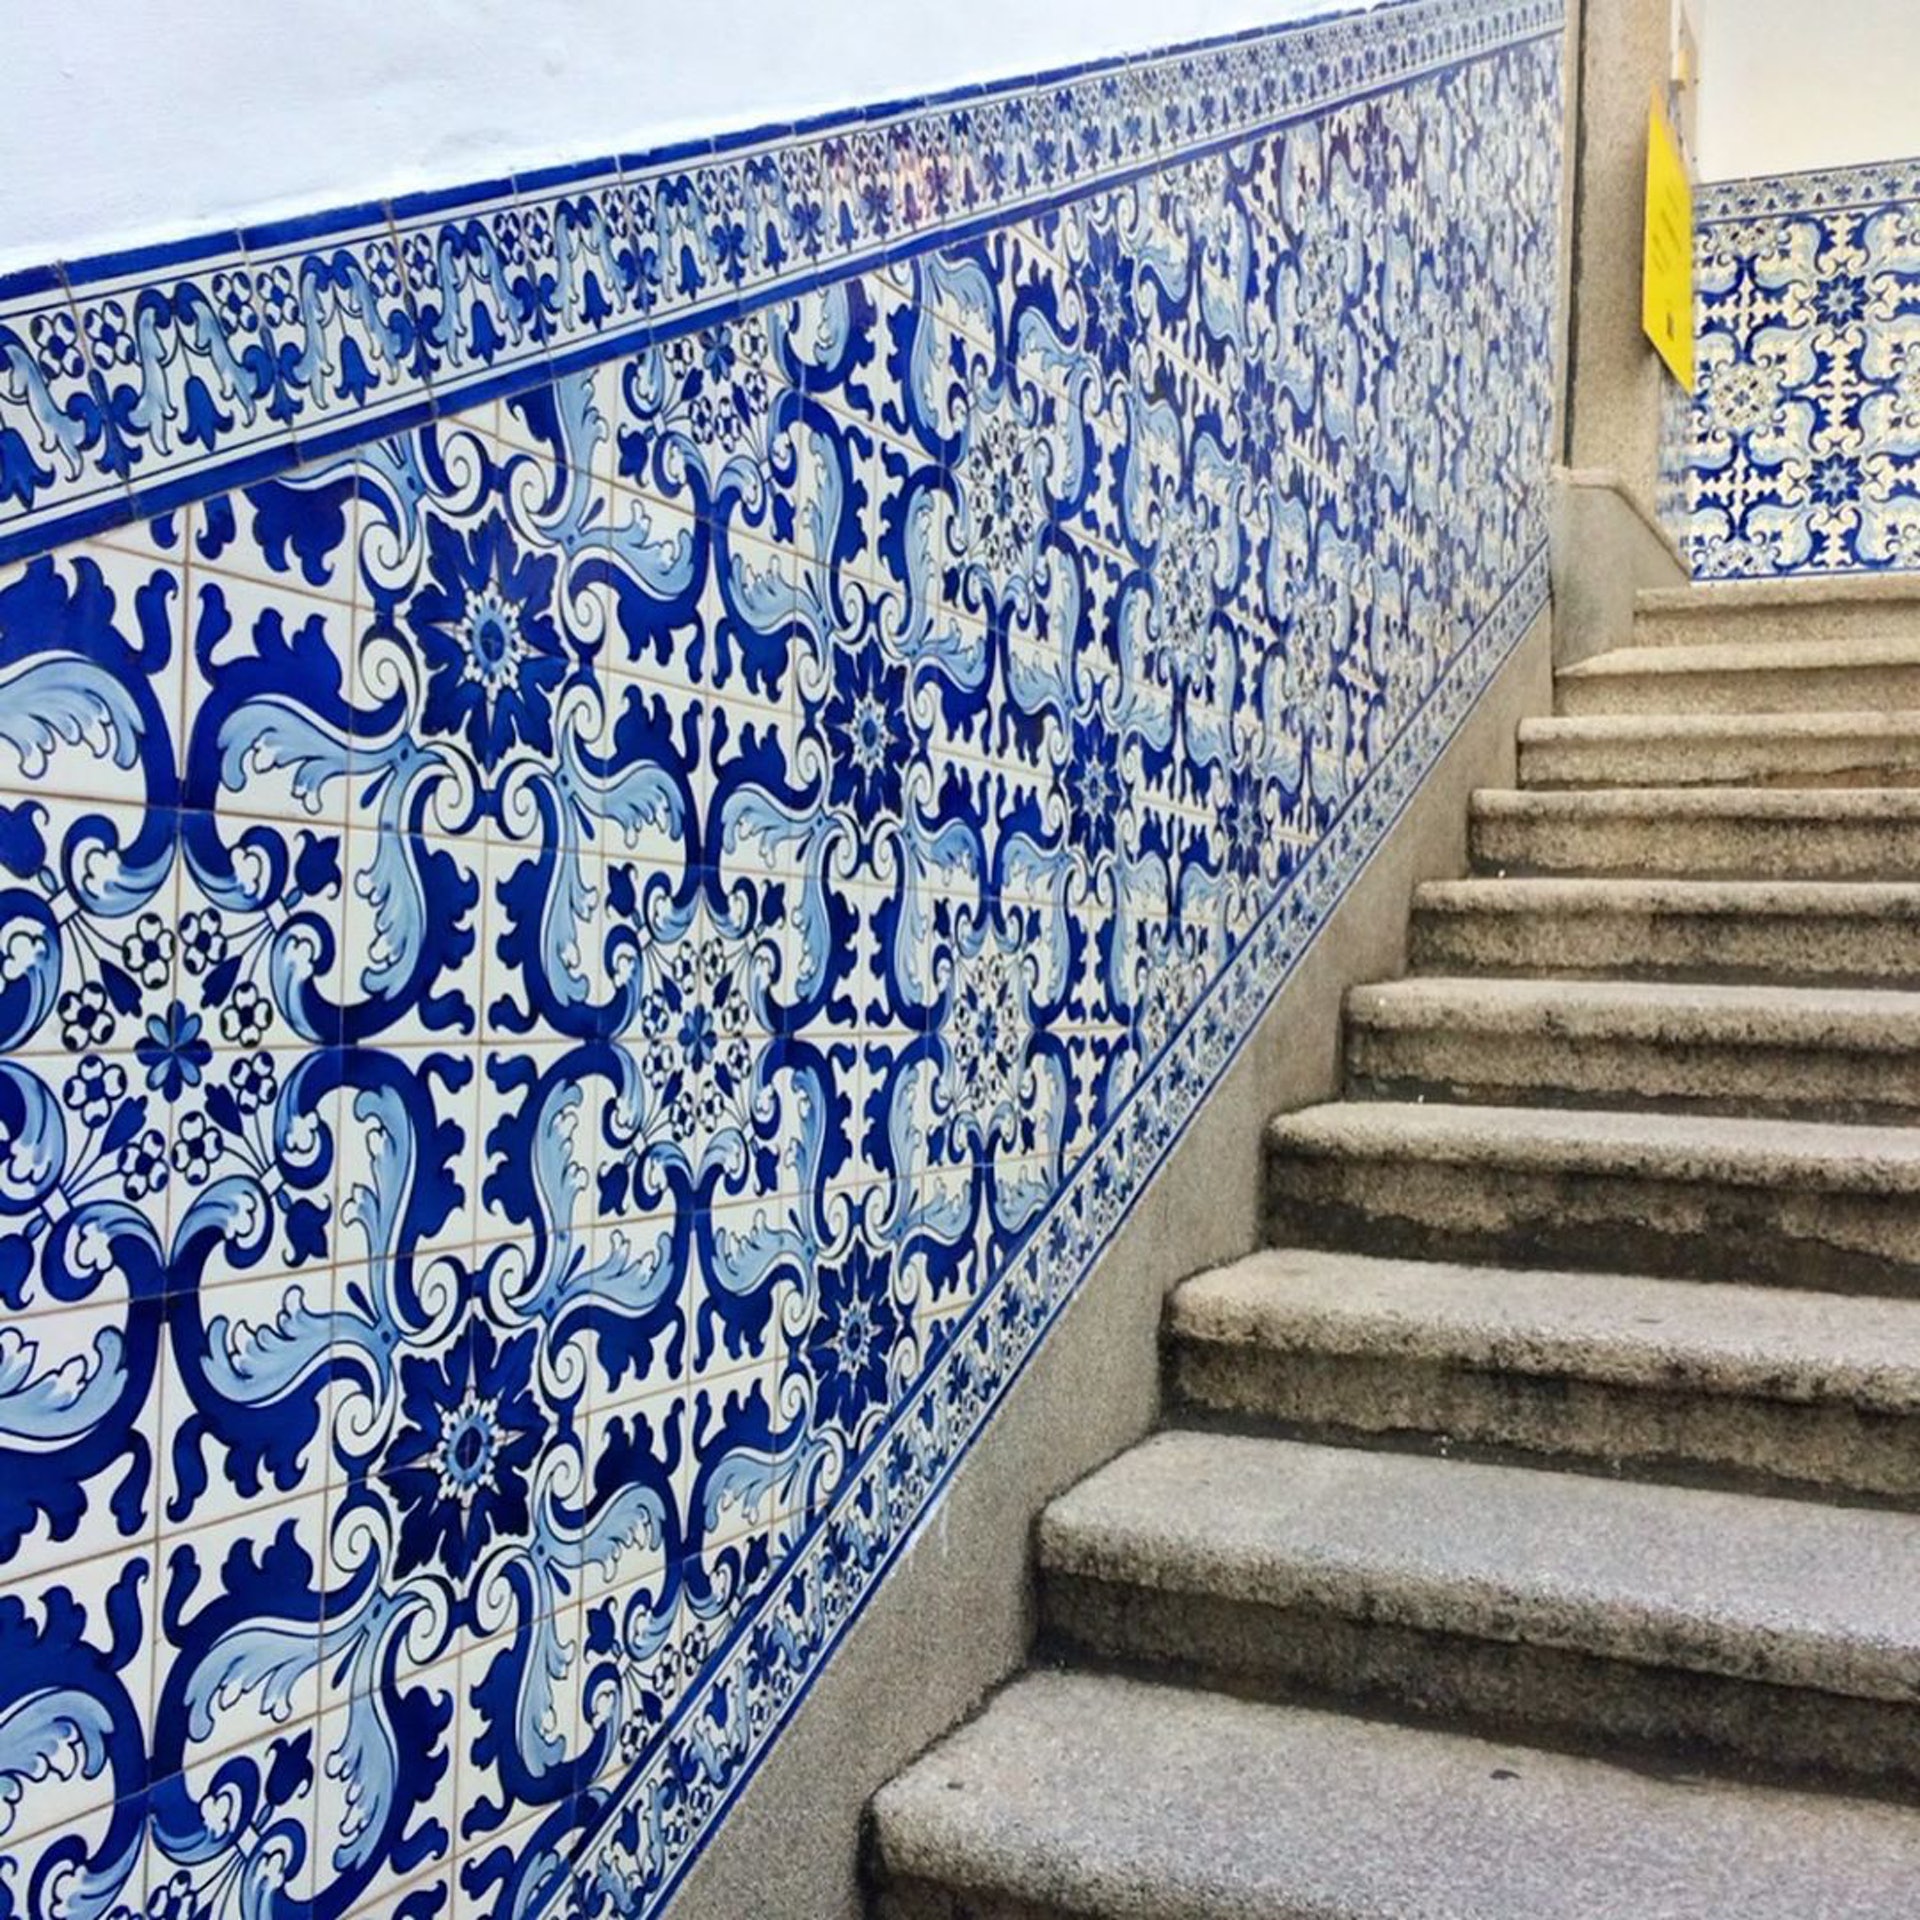 仍然保留葡萄牙風格的藍白色磁磚。(ig@ viajera_ayako)